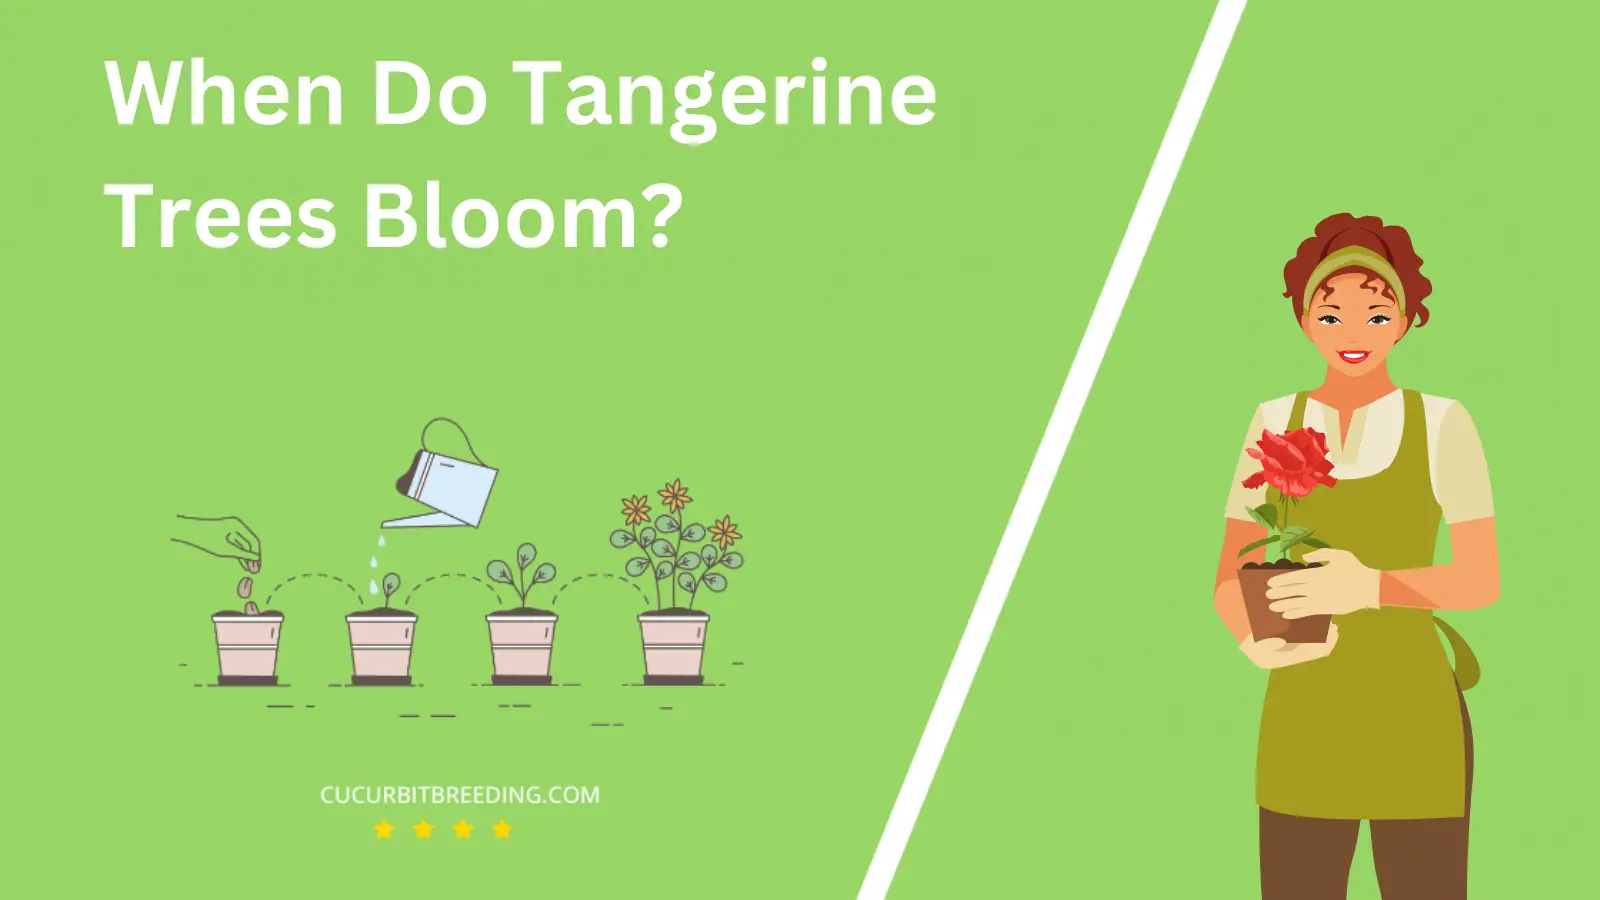 When Do Tangerine Trees Bloom?